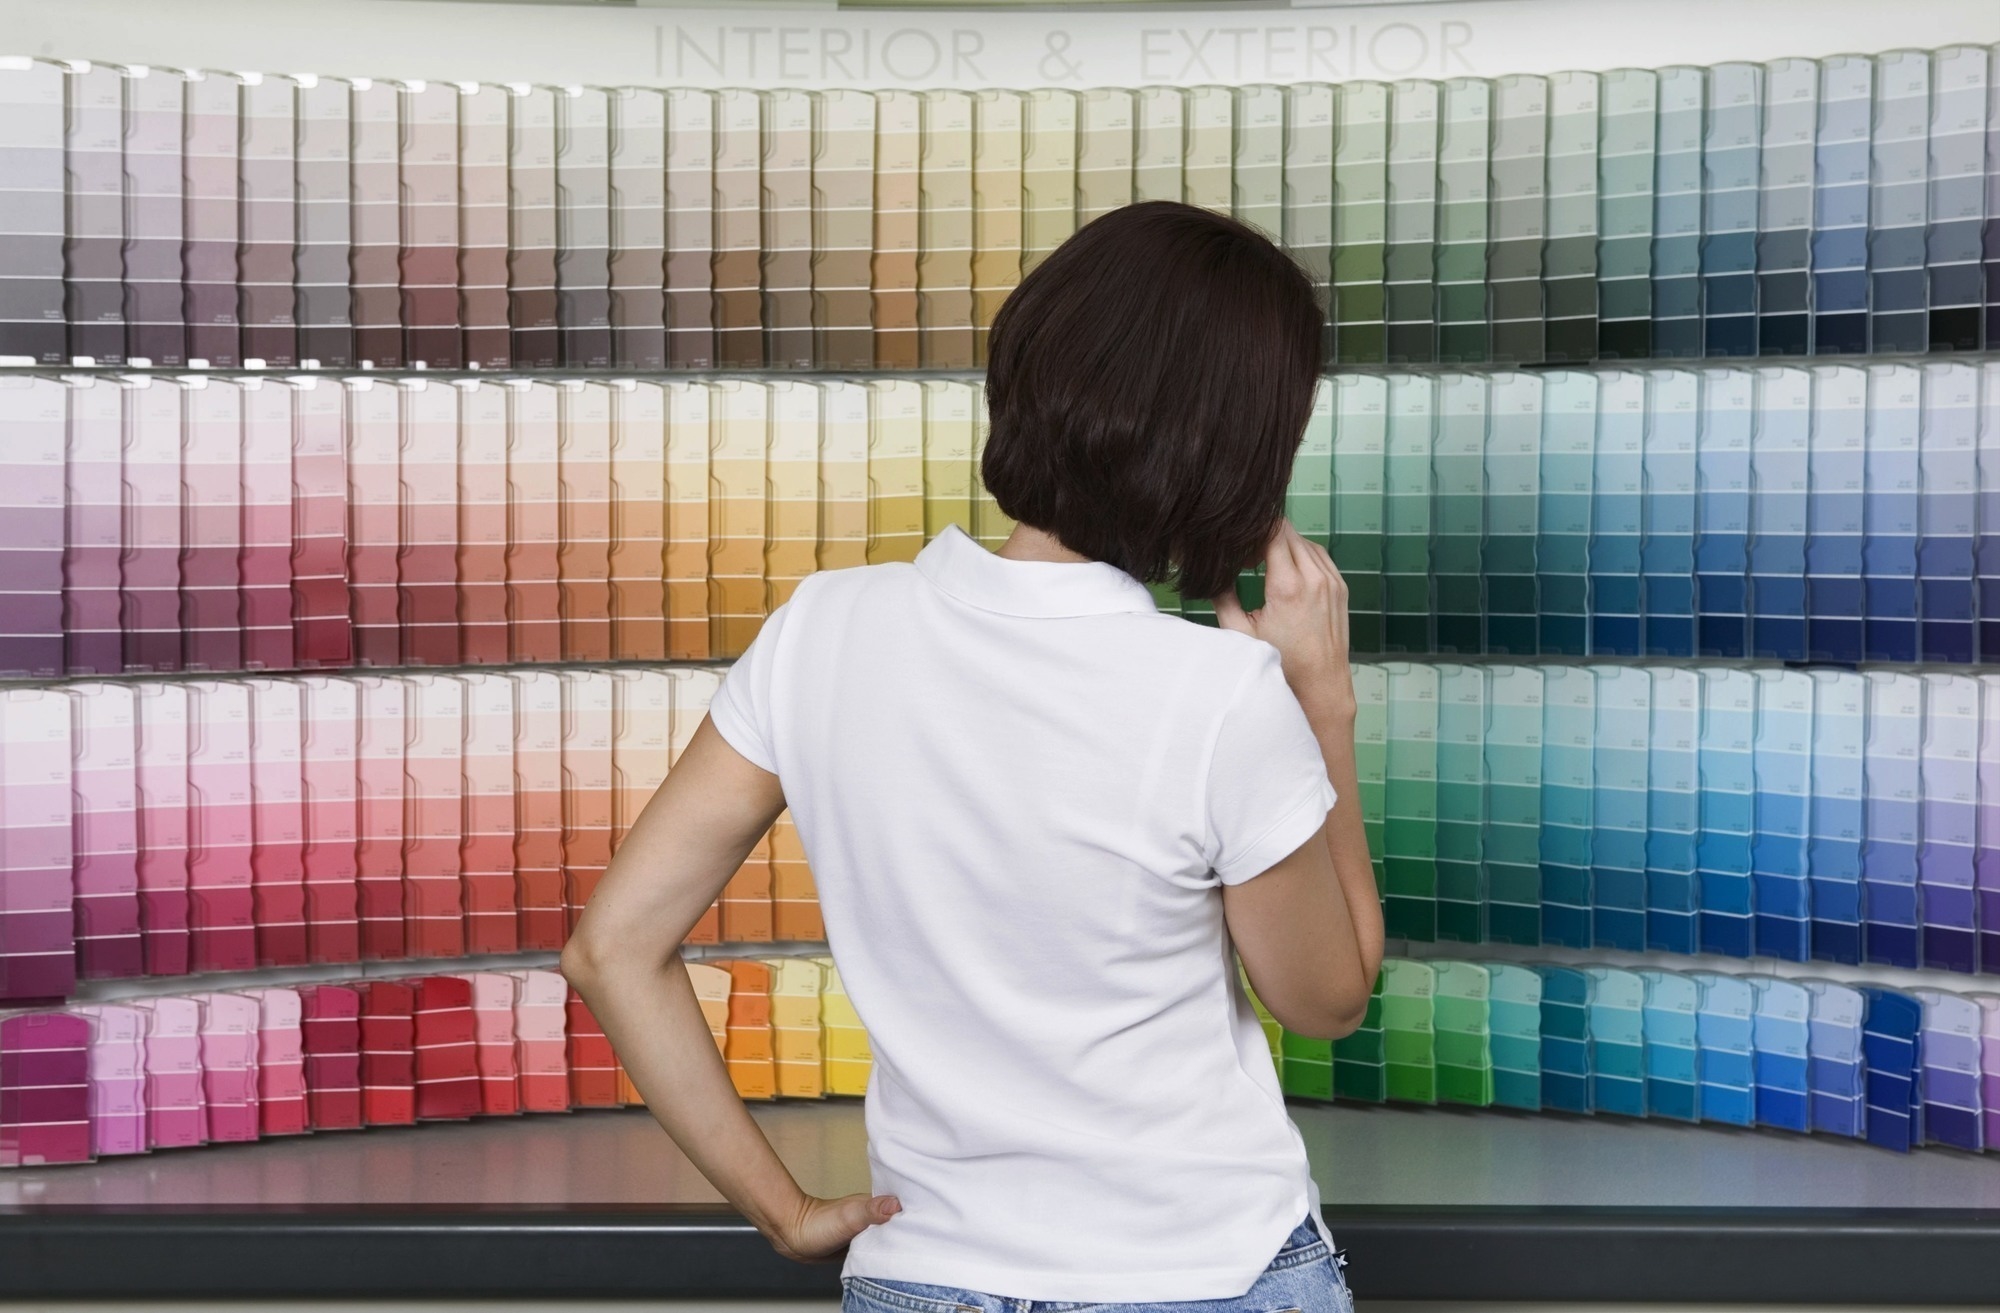 Краска для стен — обзор лучших производителей и советы как выбрать правильно лучшую краску для внутренних работ (105 фото)